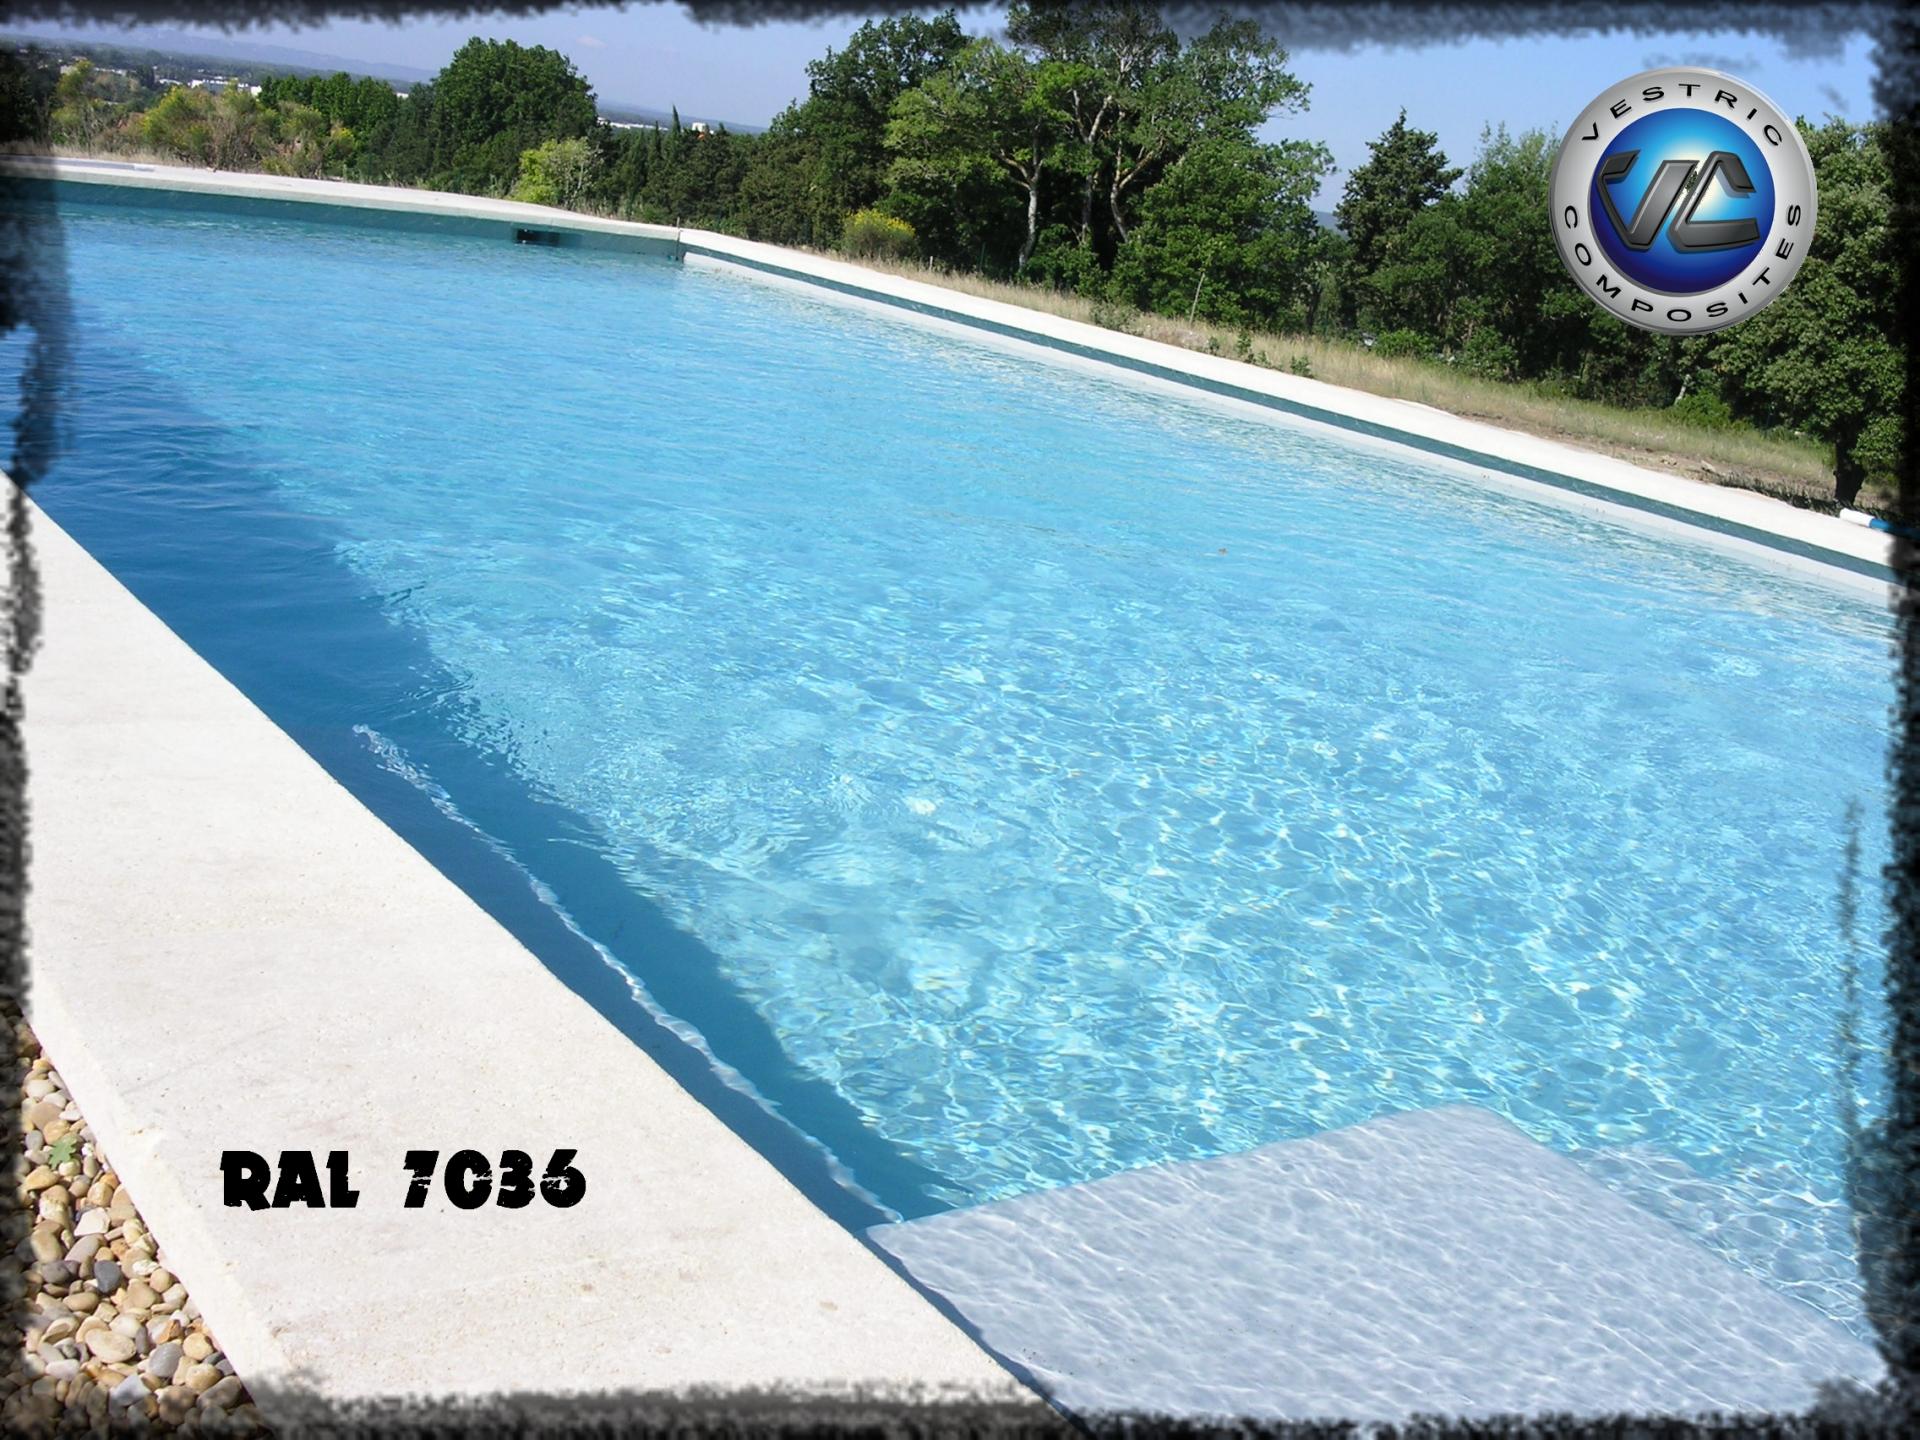 Ral 7036 gris platine piscine en eau couleur resine gel coat vestric composites 3